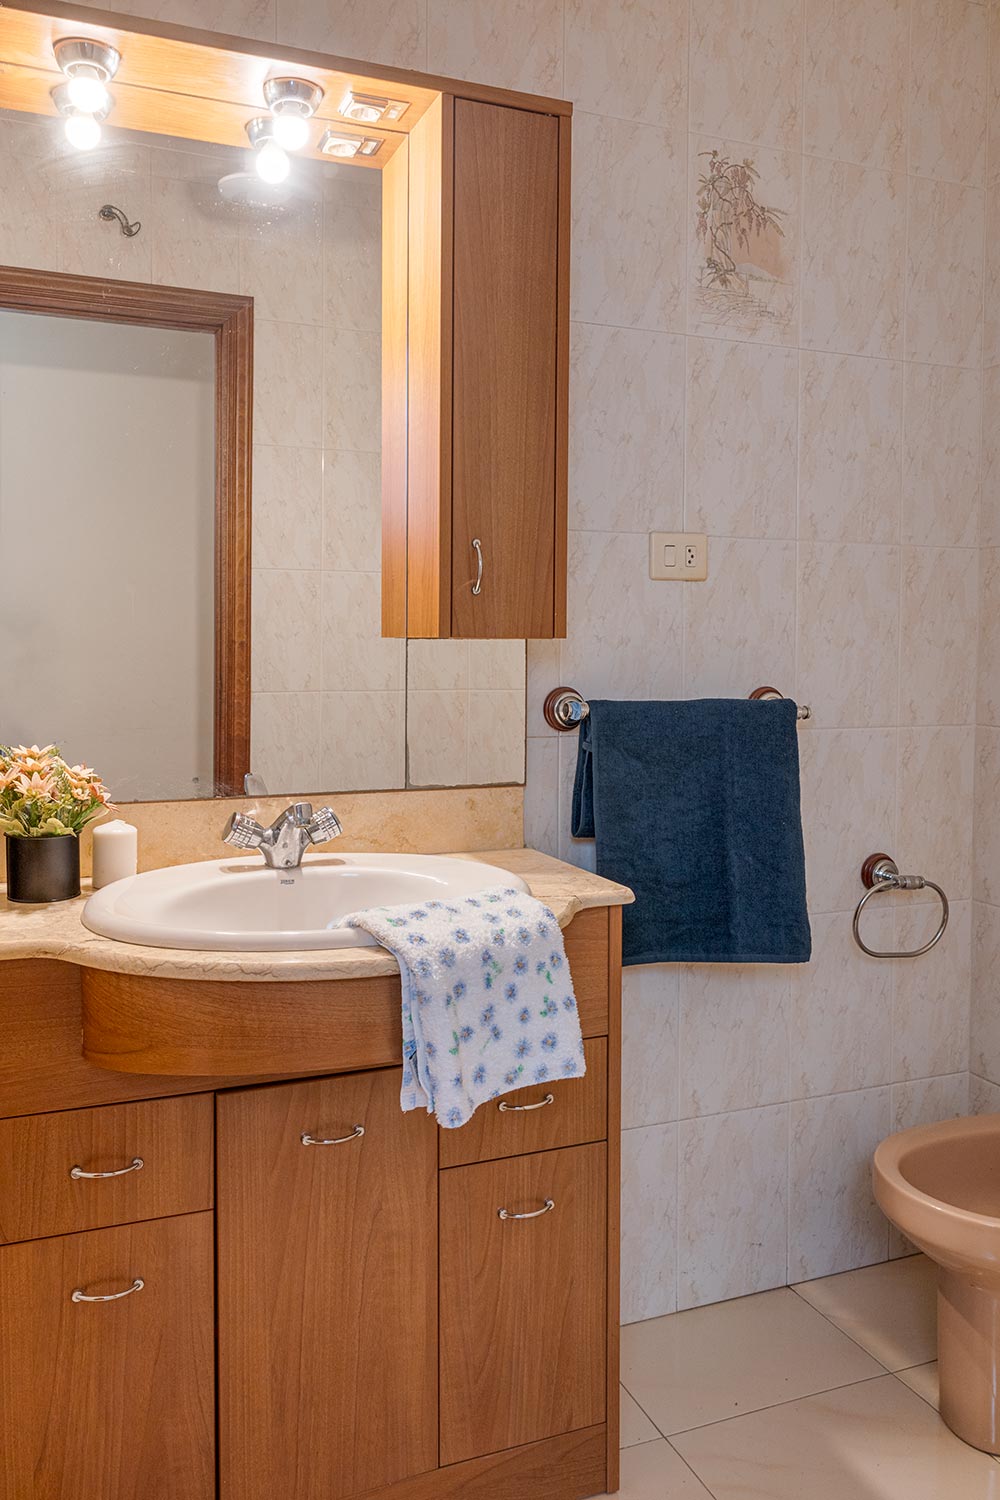 Baño bien iluminado con azulejos claros, mostrando un lavabo con gabinete de madera y un espejo grande con luces en la parte superior. Toallas azules y una planta pequeña adornan la escena, ofreciendo un ambiente práctico y acogedo